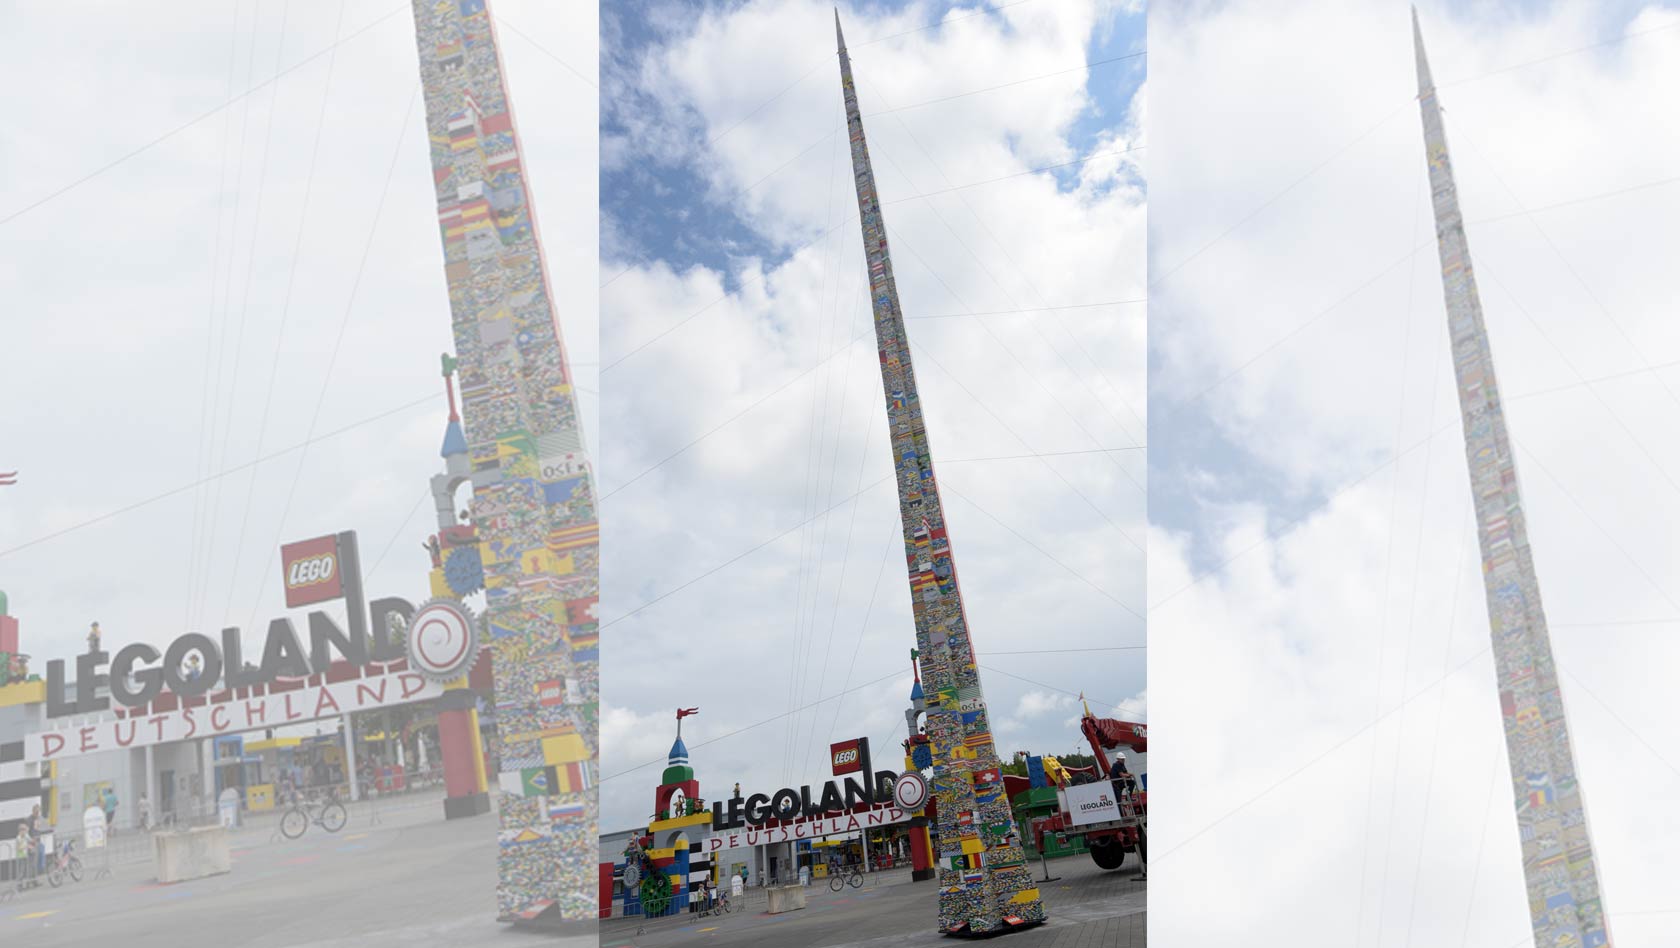 Höchster LEGO-Turm der Welt im LEGOLAND Deutschland